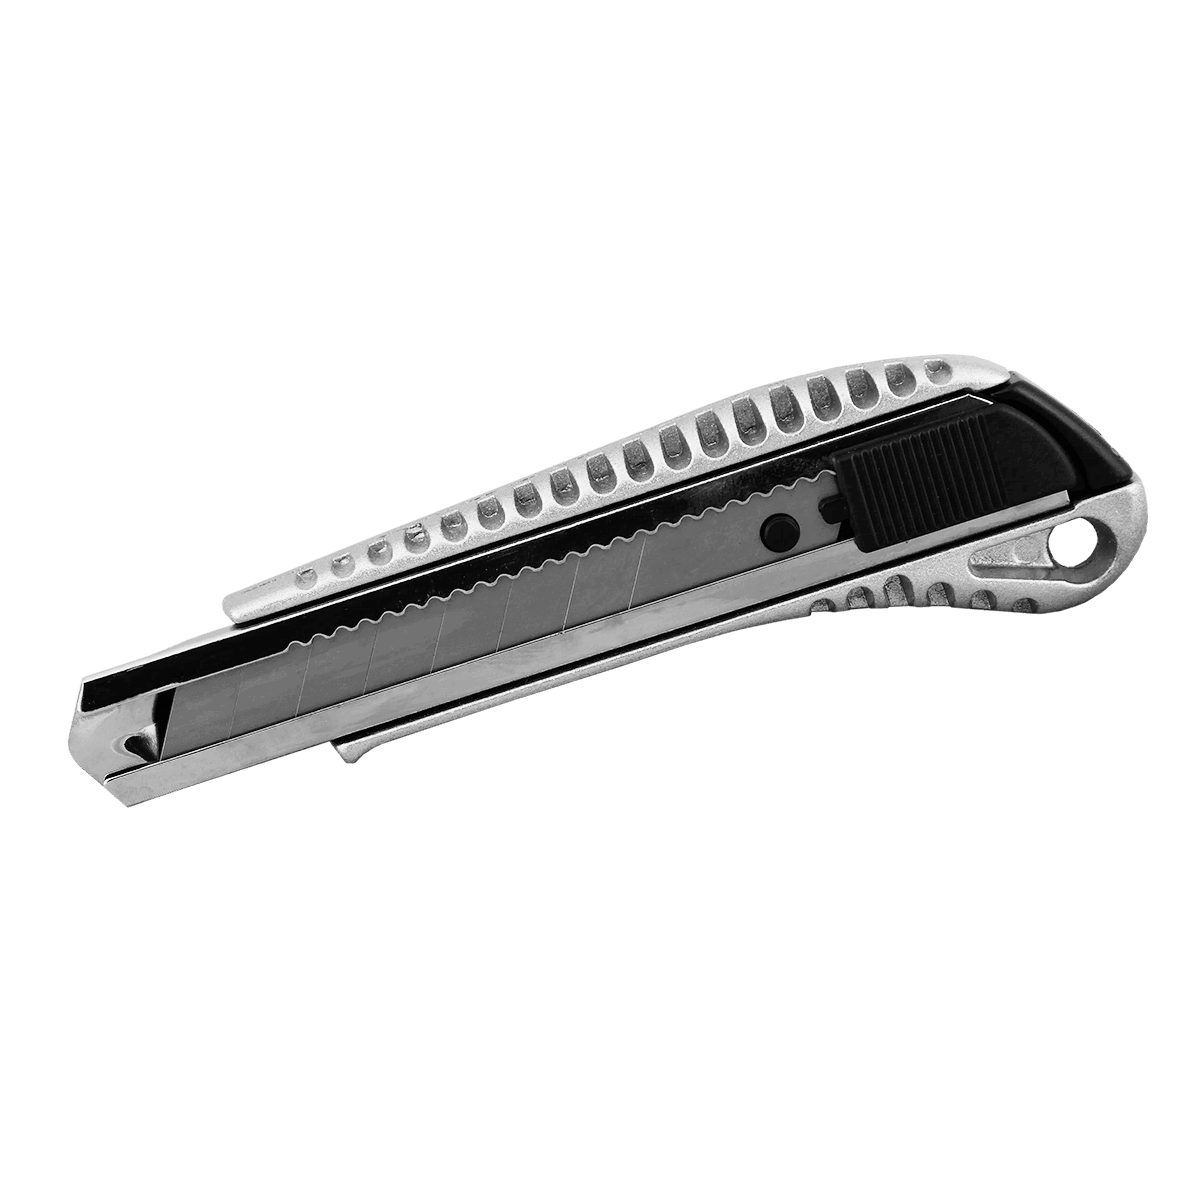 TRIZERATOP Cuttermesser Cuttermesser Teppichmesser Alu 18 mm, (1x 1x Abbrechmesser Cutter) | Cutter